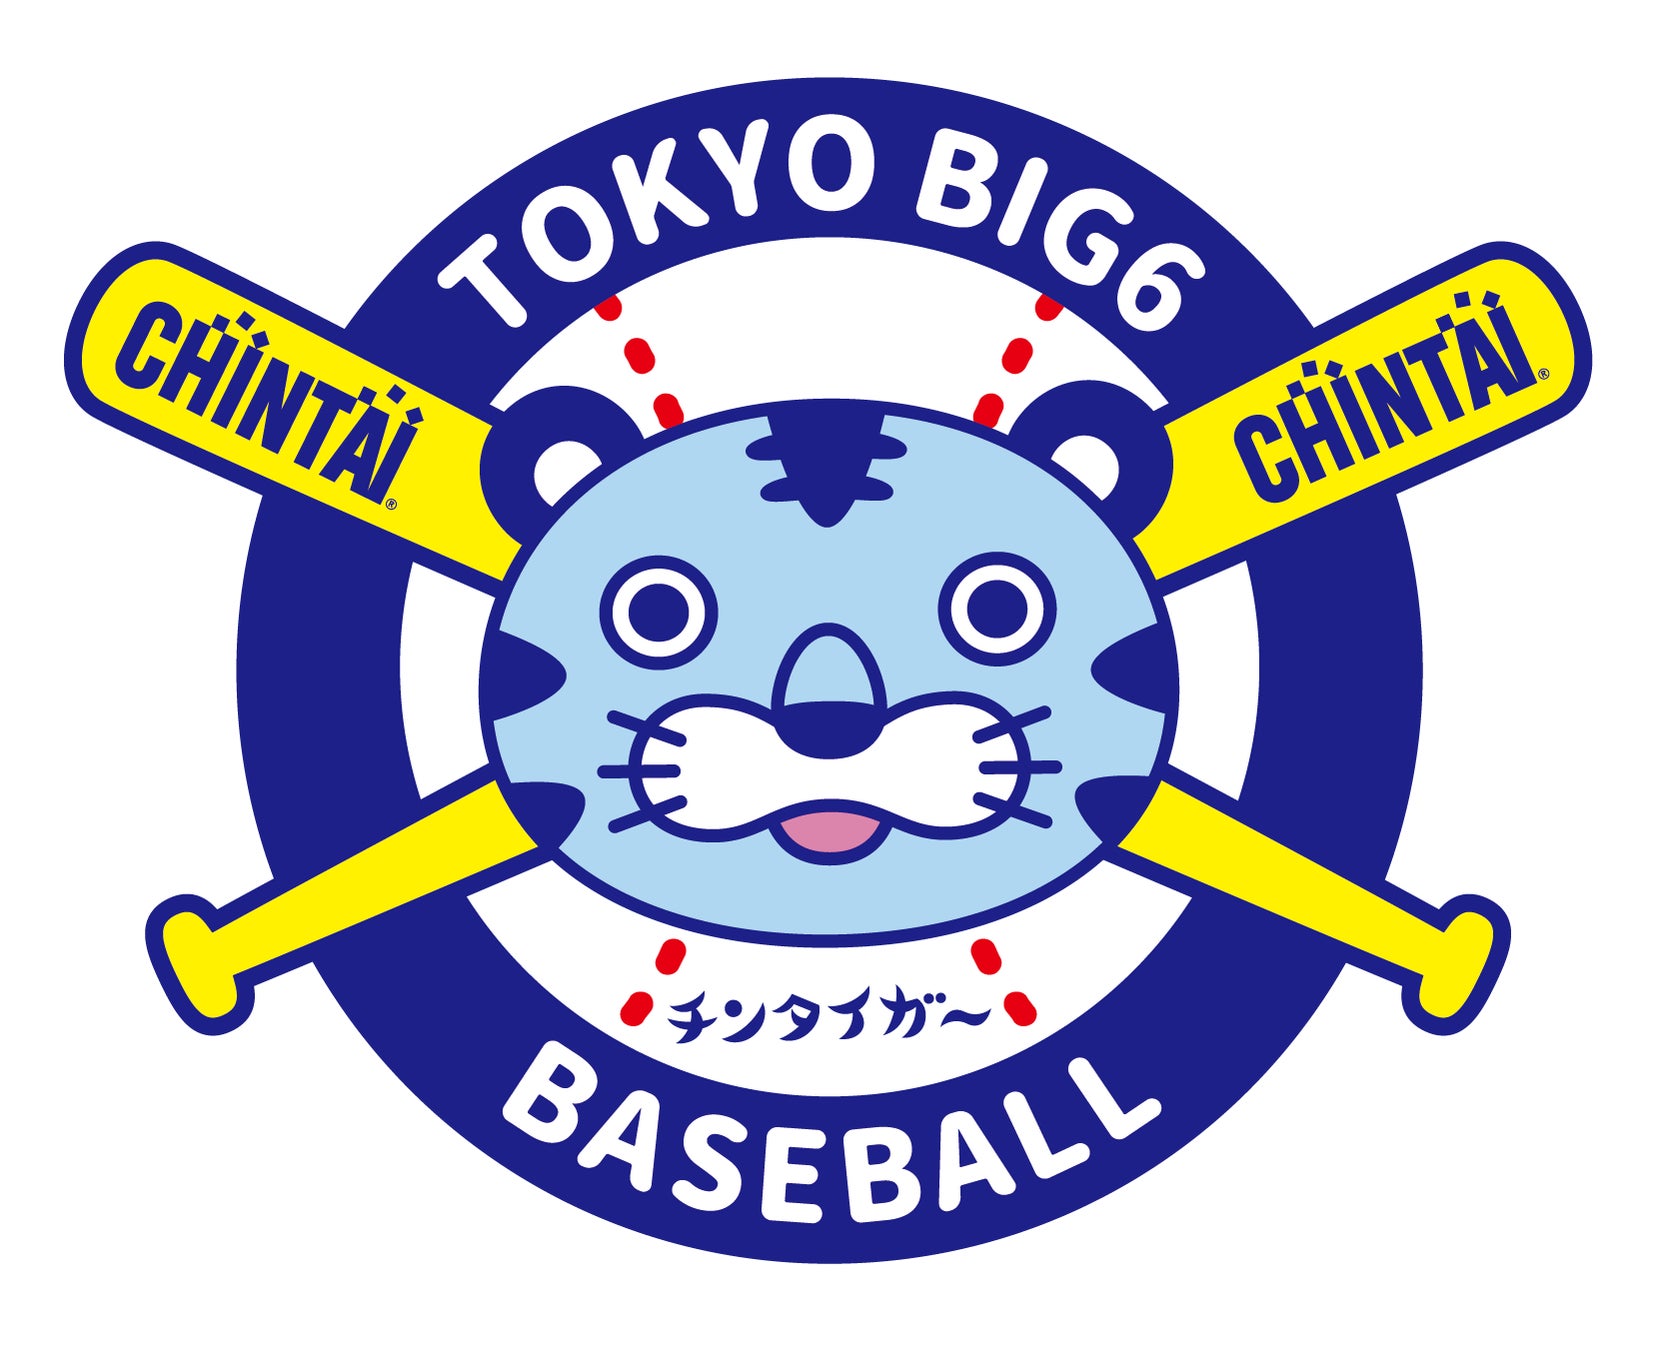 オリジナルユニフォームを着て選手に声援を届けよう！CHINTAIが東京六大学野球ゼミナール「TRYフェスタ」に協賛のサブ画像2_左肩にはCHINTAIオリジナルワッペンがデザイン